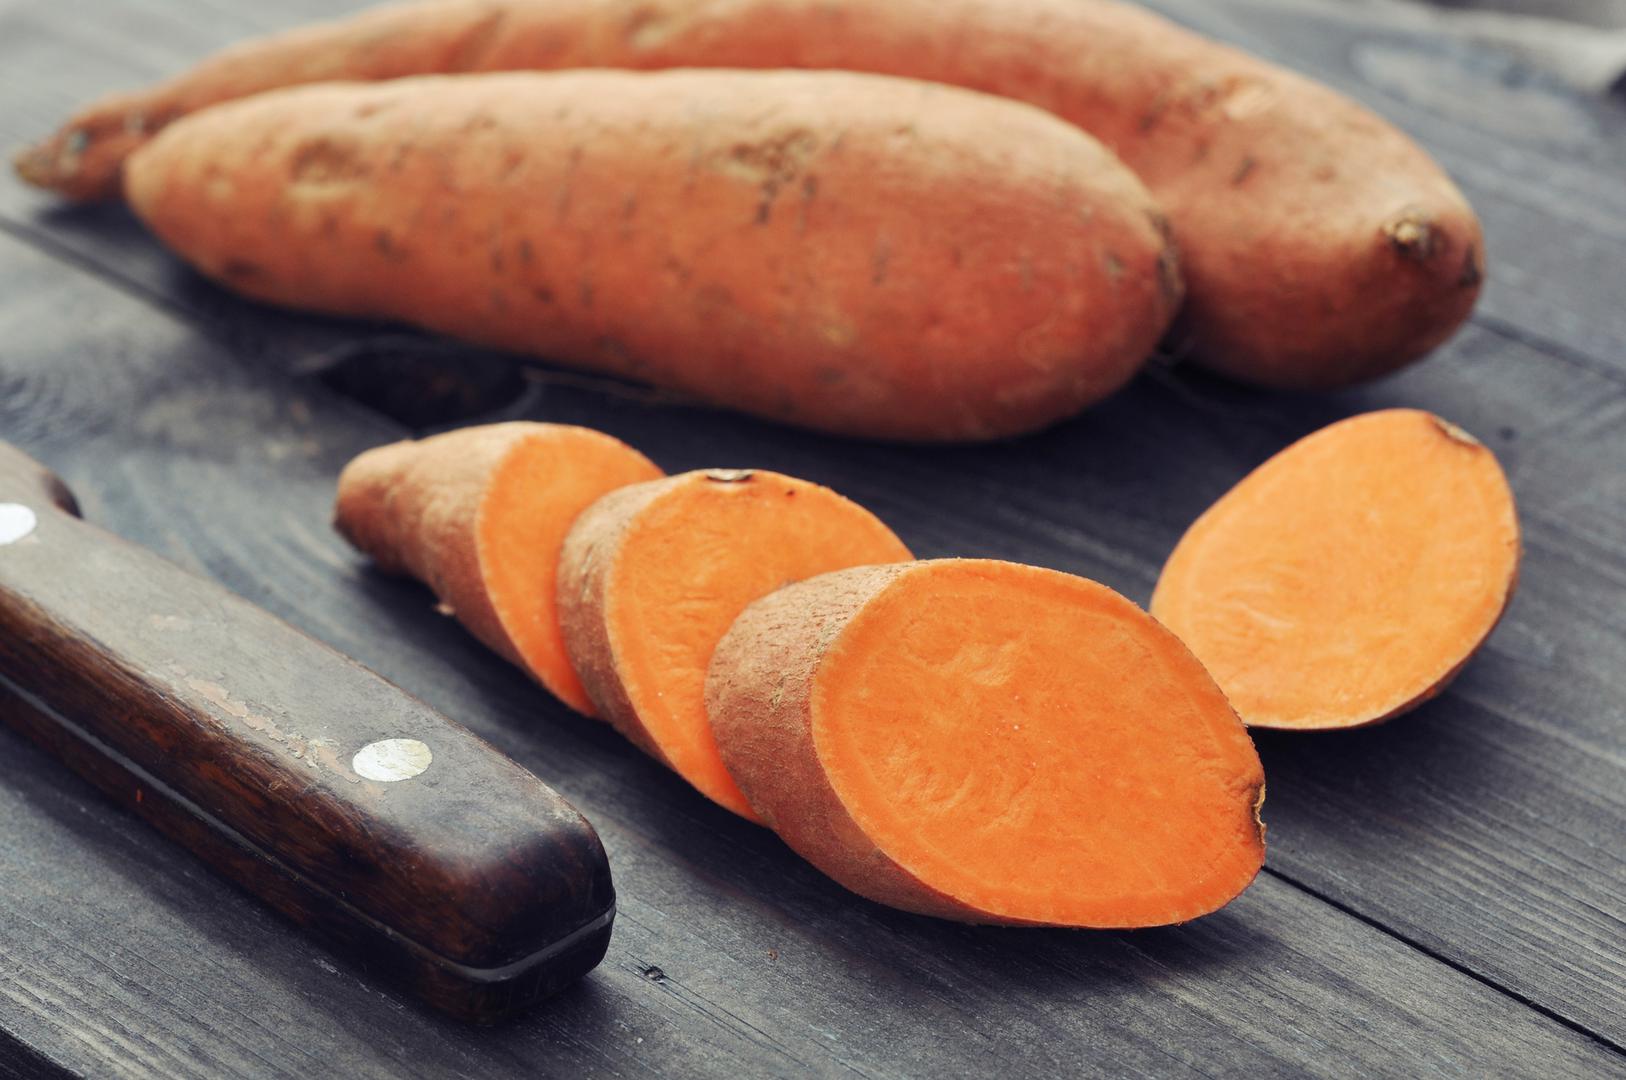 BATAT - Samo jedan komad tog korjenastog povrća sadrži oko 27 grama ugljikohidrata, ali ne dopustite da vas to obeshrabri. Studije su pokazale da ovaj slatki krumpir povećava razinu hormona adiponektina koji pomaže regulirati šećer u krvi.